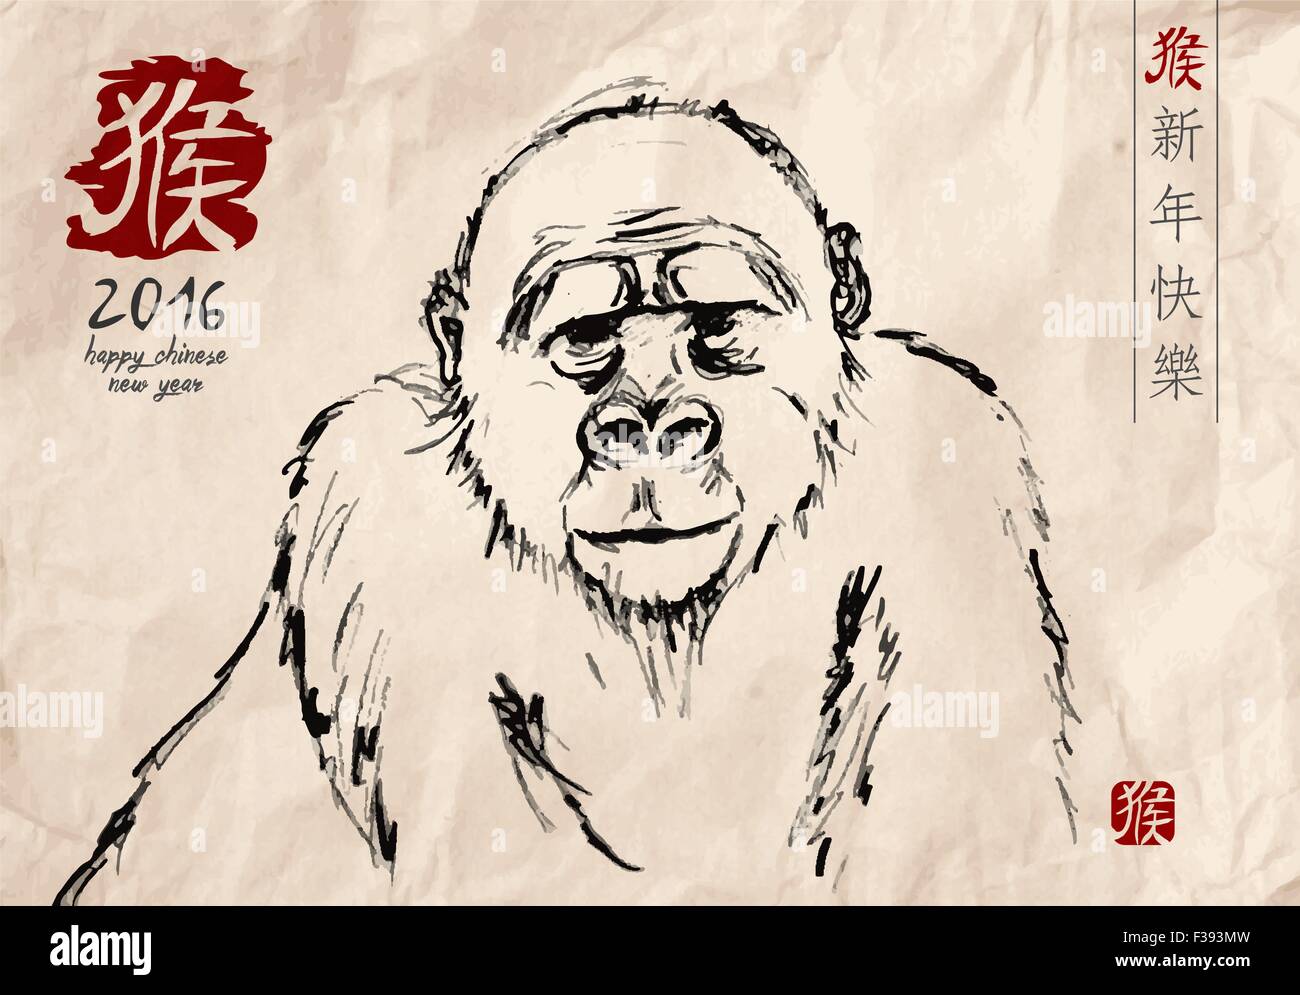 2016 Joyeux Nouvel An chinois du singe gorille dessiné à la main dans un style art traditionnel sur papier texturé. Vecteur EPS10. Illustration de Vecteur